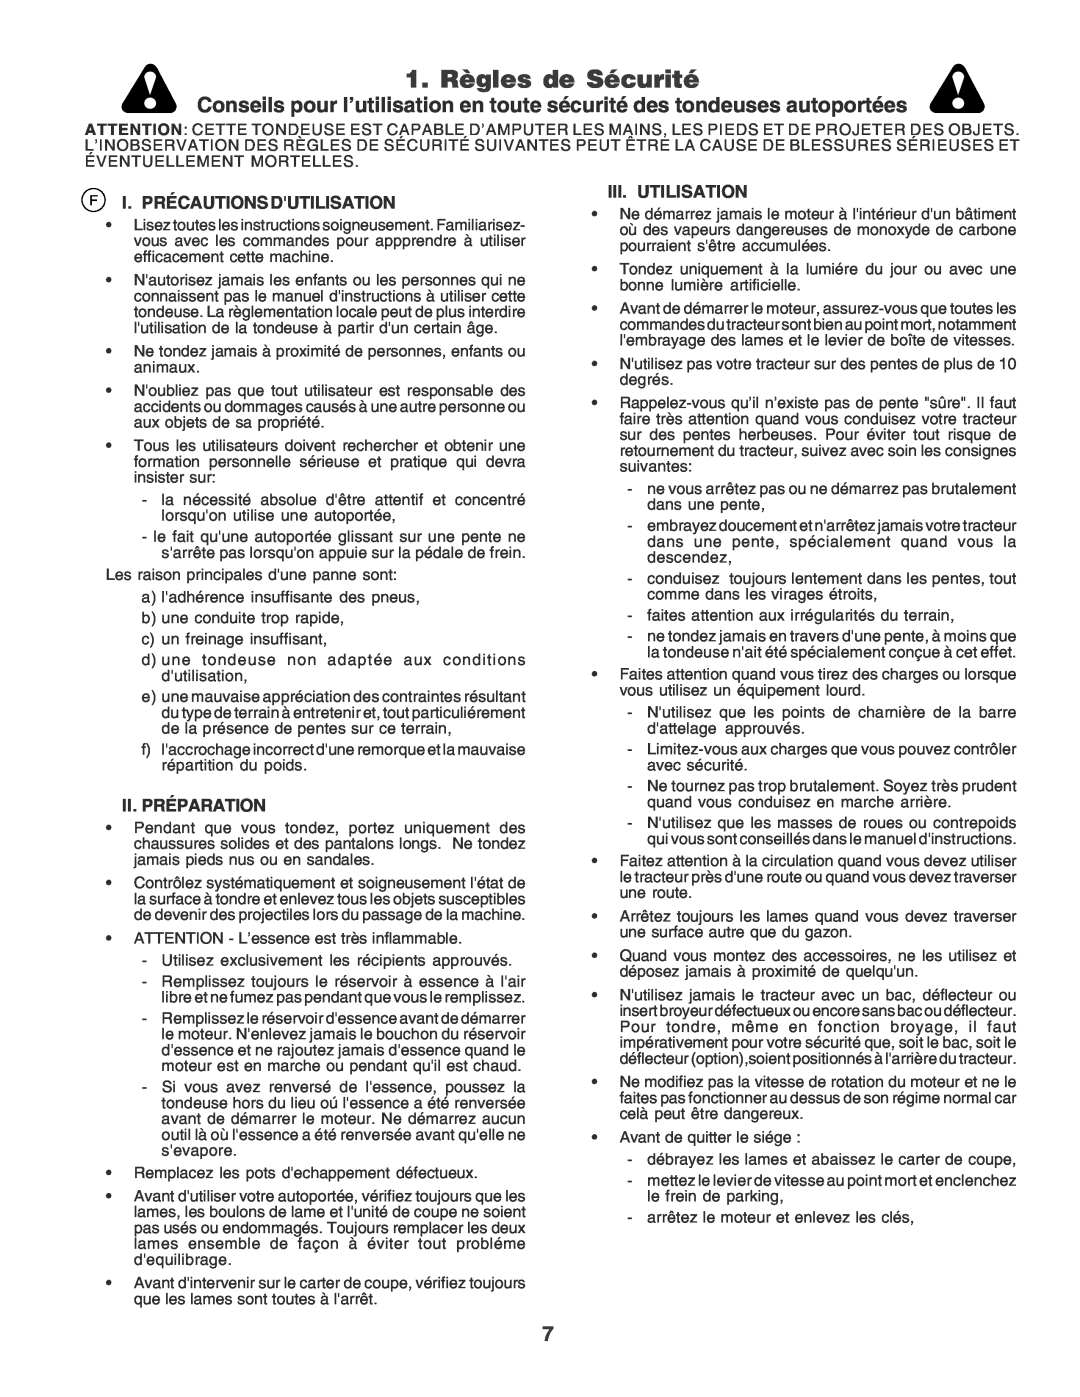 Husqvarna LT135 instruction manual 1. Règles de Sécurité, F I. Précautions Dutilisation, Ii. Préparation, Iii. Utilisation 